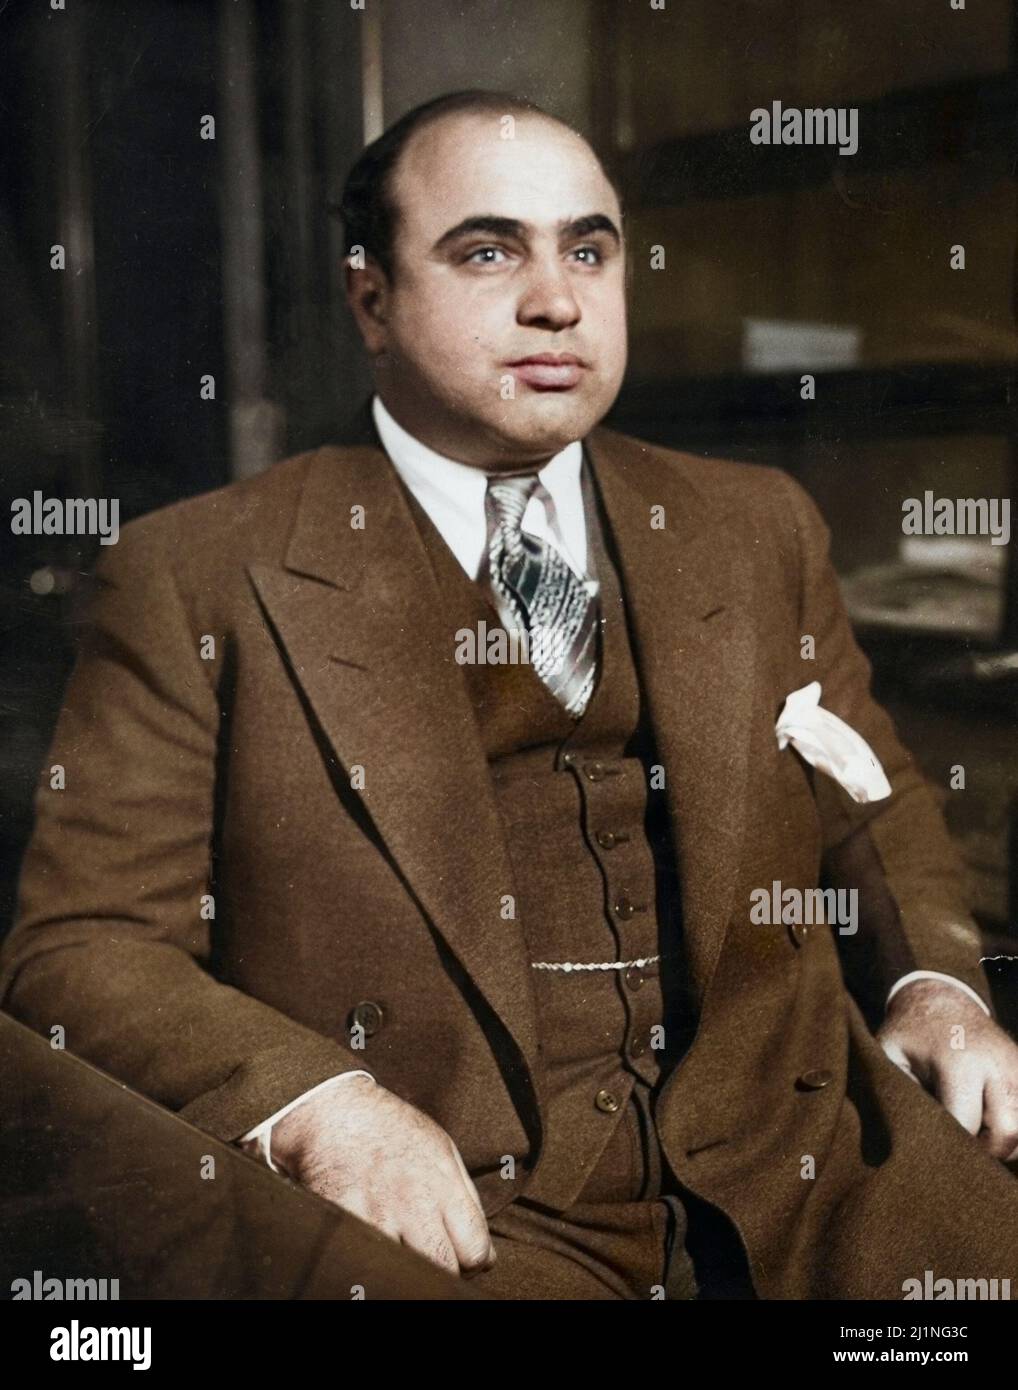 Criminale americano al Capone (1899 - 1947). Il massacro di San Valentino ha cementato il suo controllo sugli underworld di Chicago. 1930. Colorato. Foto Stock